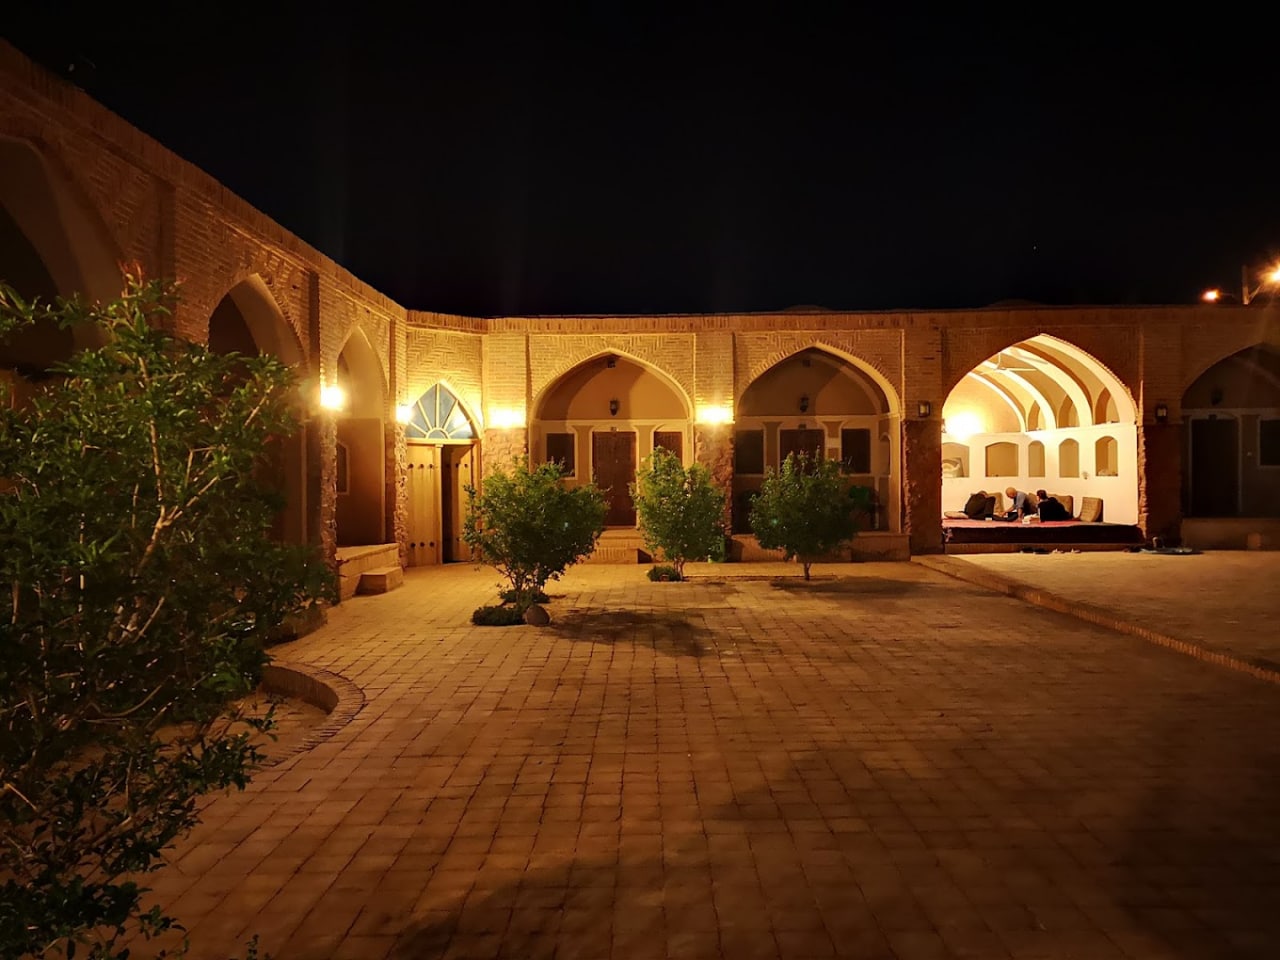 کویری اجاره اقامتگاه سنتی در انارک اصفهان - 10